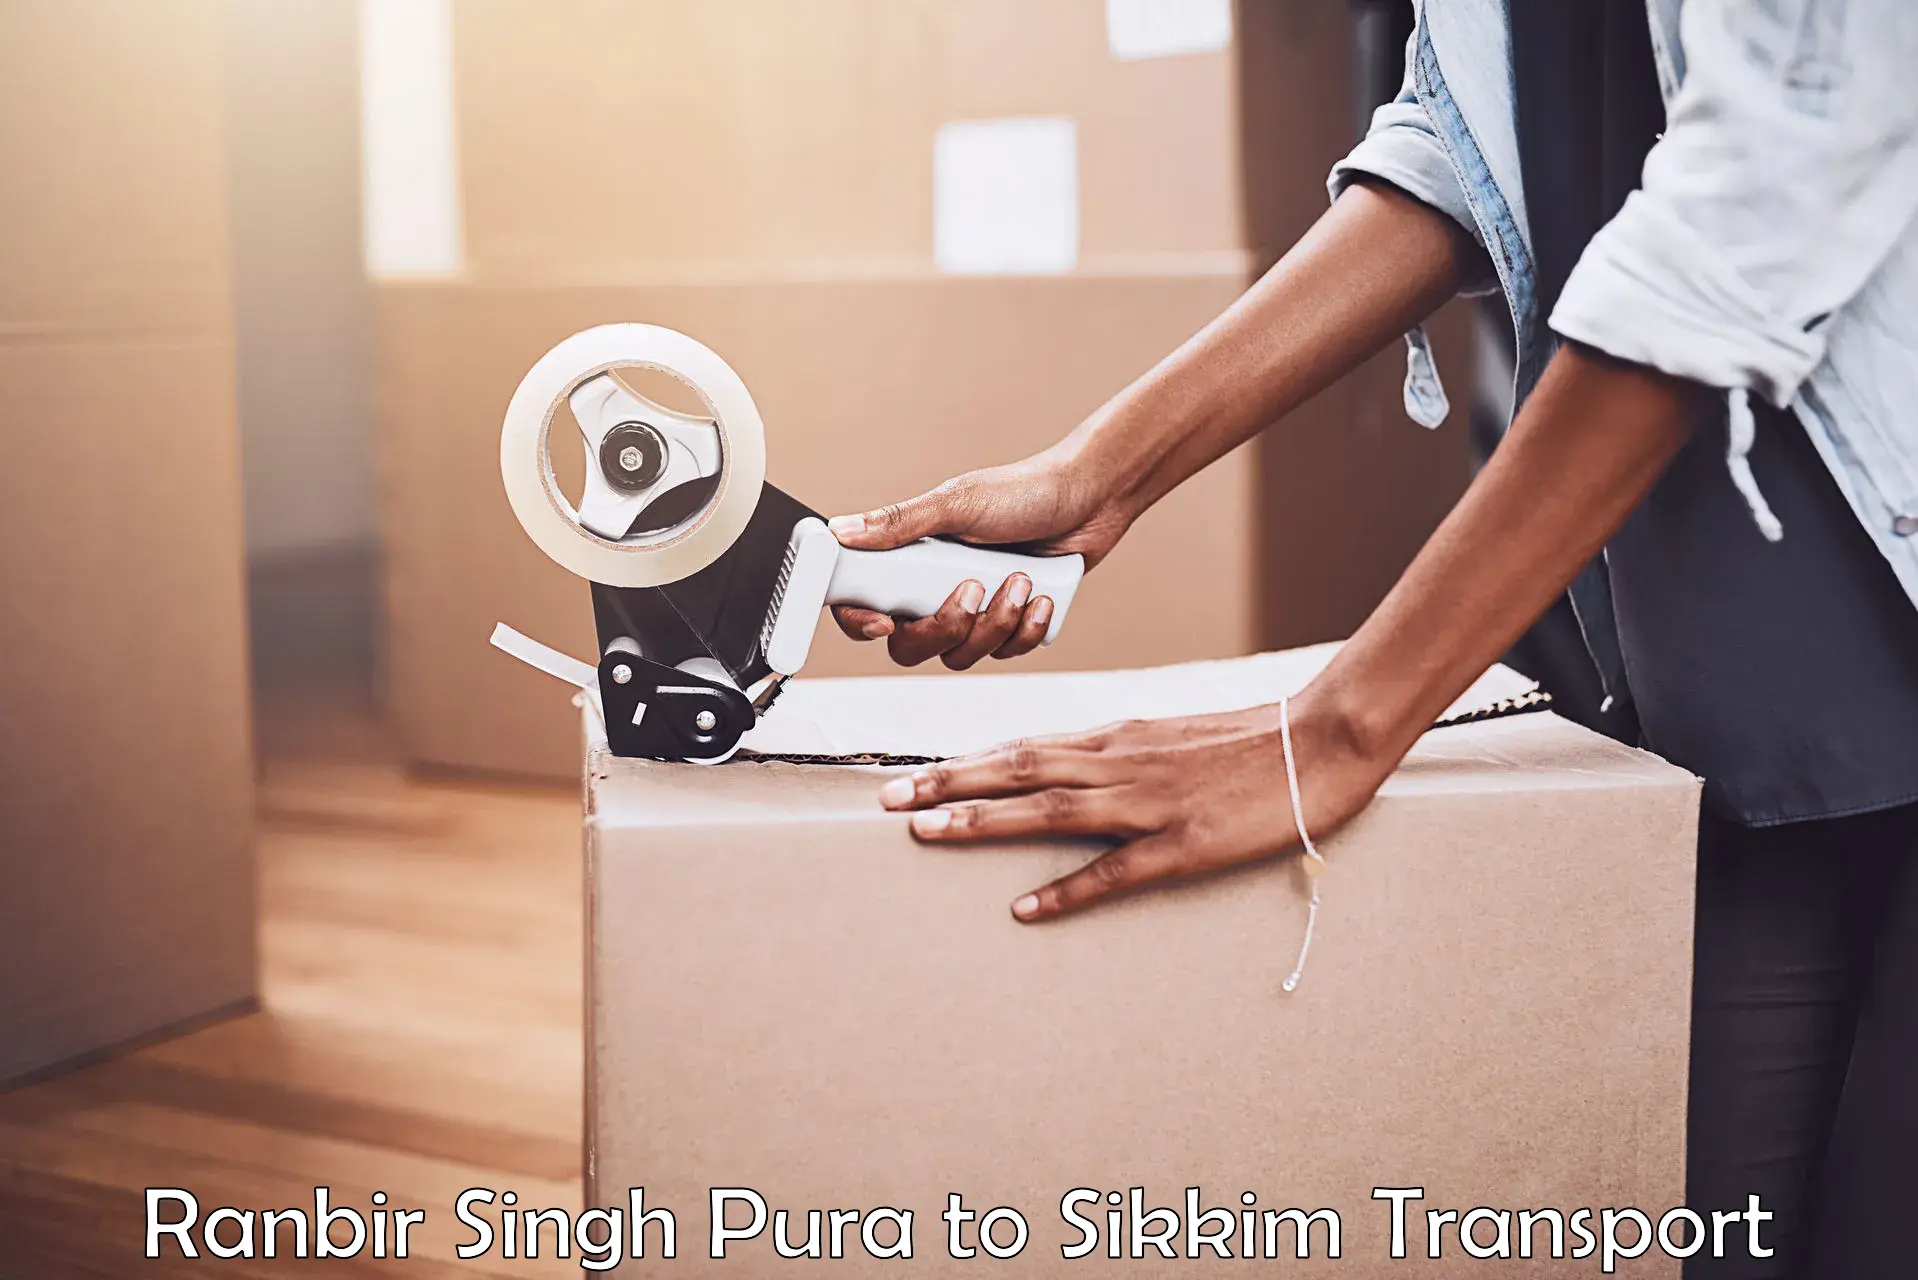 Delivery service Ranbir Singh Pura to Singtam